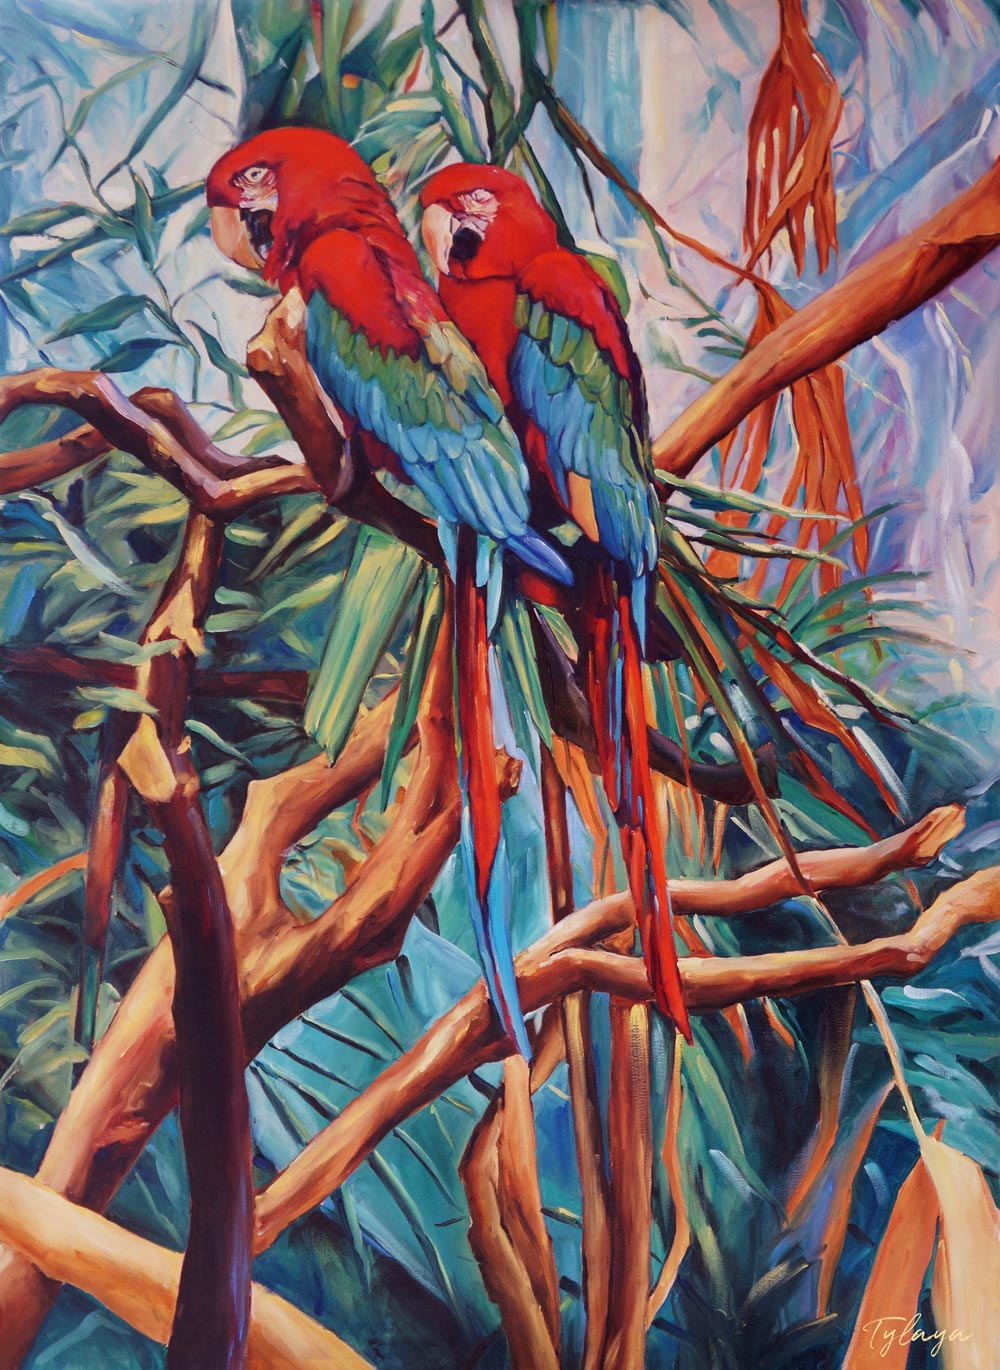 Peinture tropicale perroquets dans un tableau jungle et nature d’un paysage d’animaux sauvages représentant un couple de Ara macao rouge dans la jungle avec la végétation des palmiers aux feuilles multicolores pour une décoration exotique